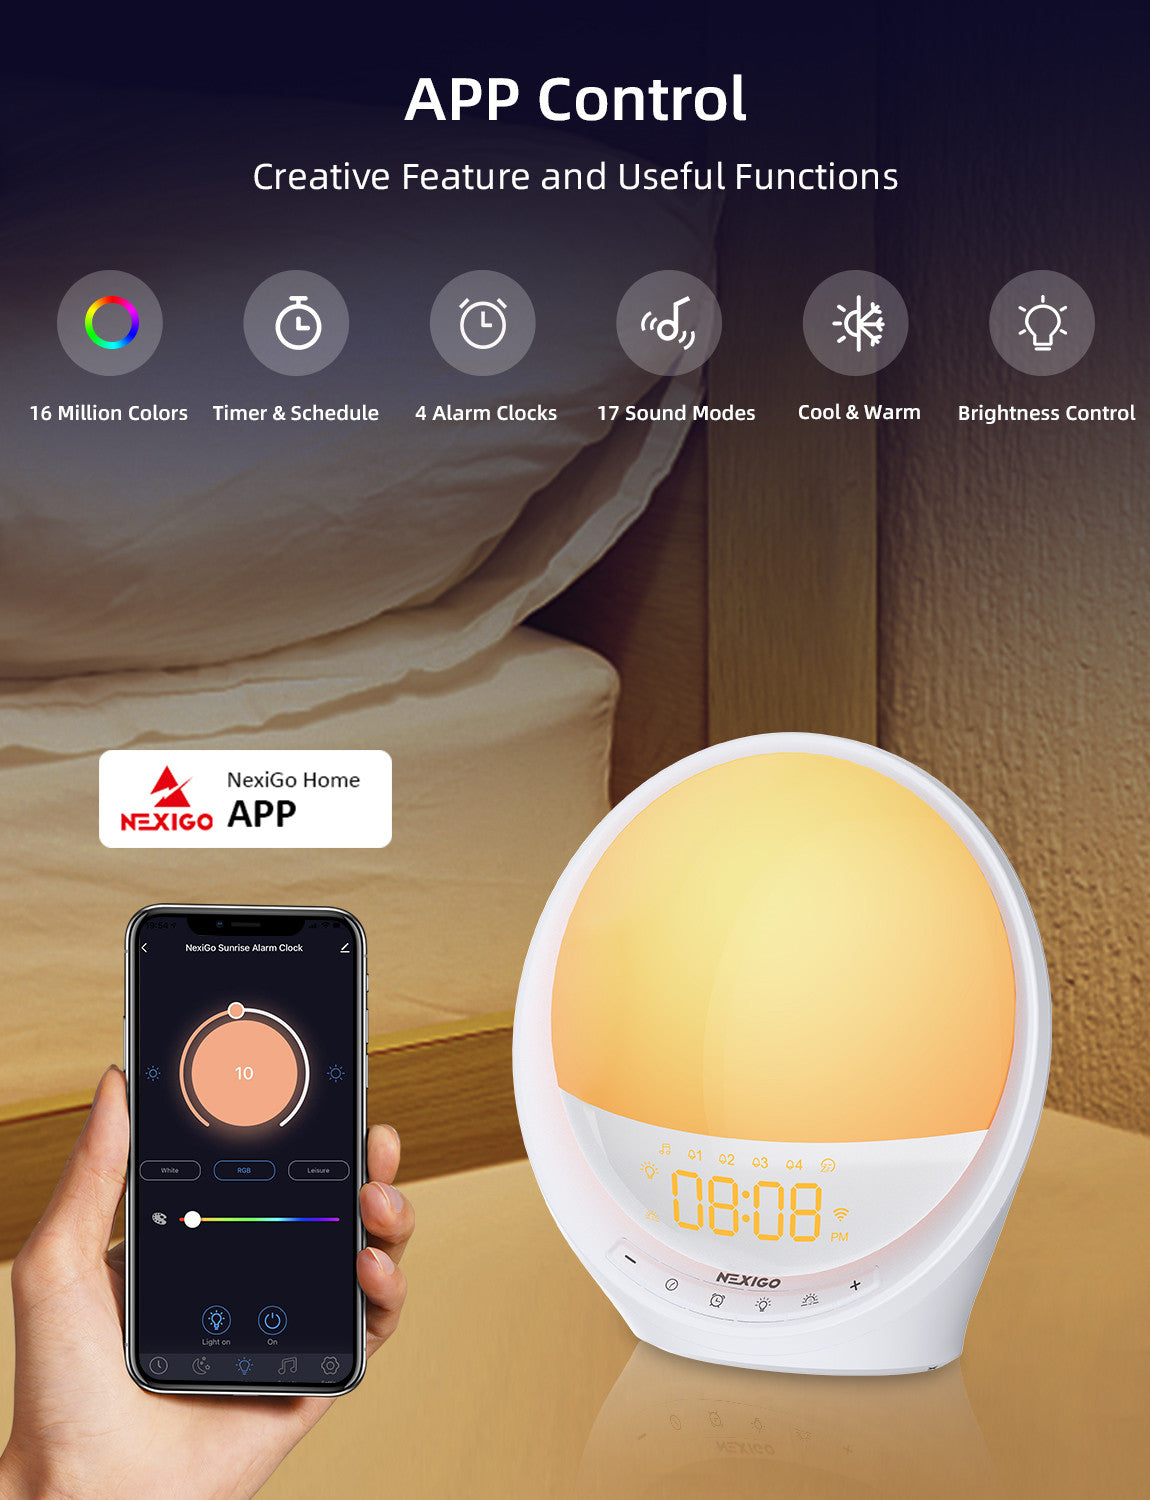 The NexiGo Home APP offers you advanced control over your Sunrise Alarm Clock.